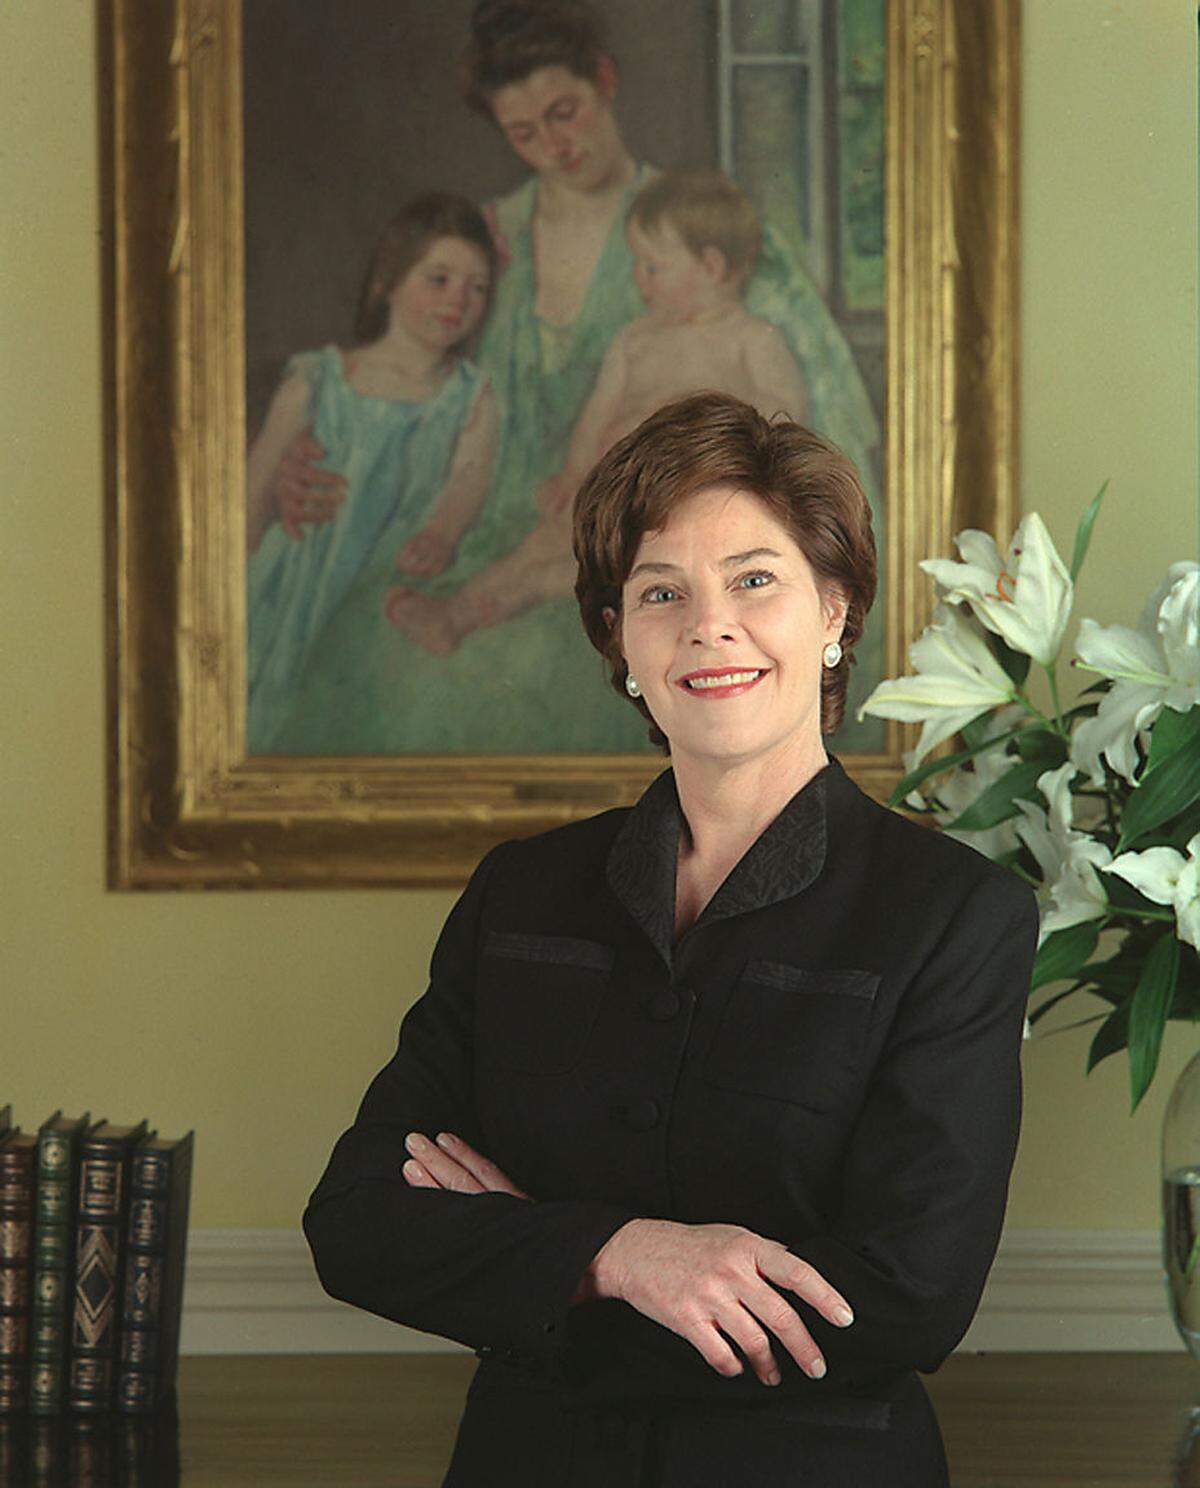 Obamas direkte Vorgängerin in der Rolle als First Lady, Laura Welch Bush, entschied sich bei ihrem ersten offiziellen Porträtfoto 2001 für eine selbstbewusste Pose, die auch an das neue Foto Melania Trumps erinnert.